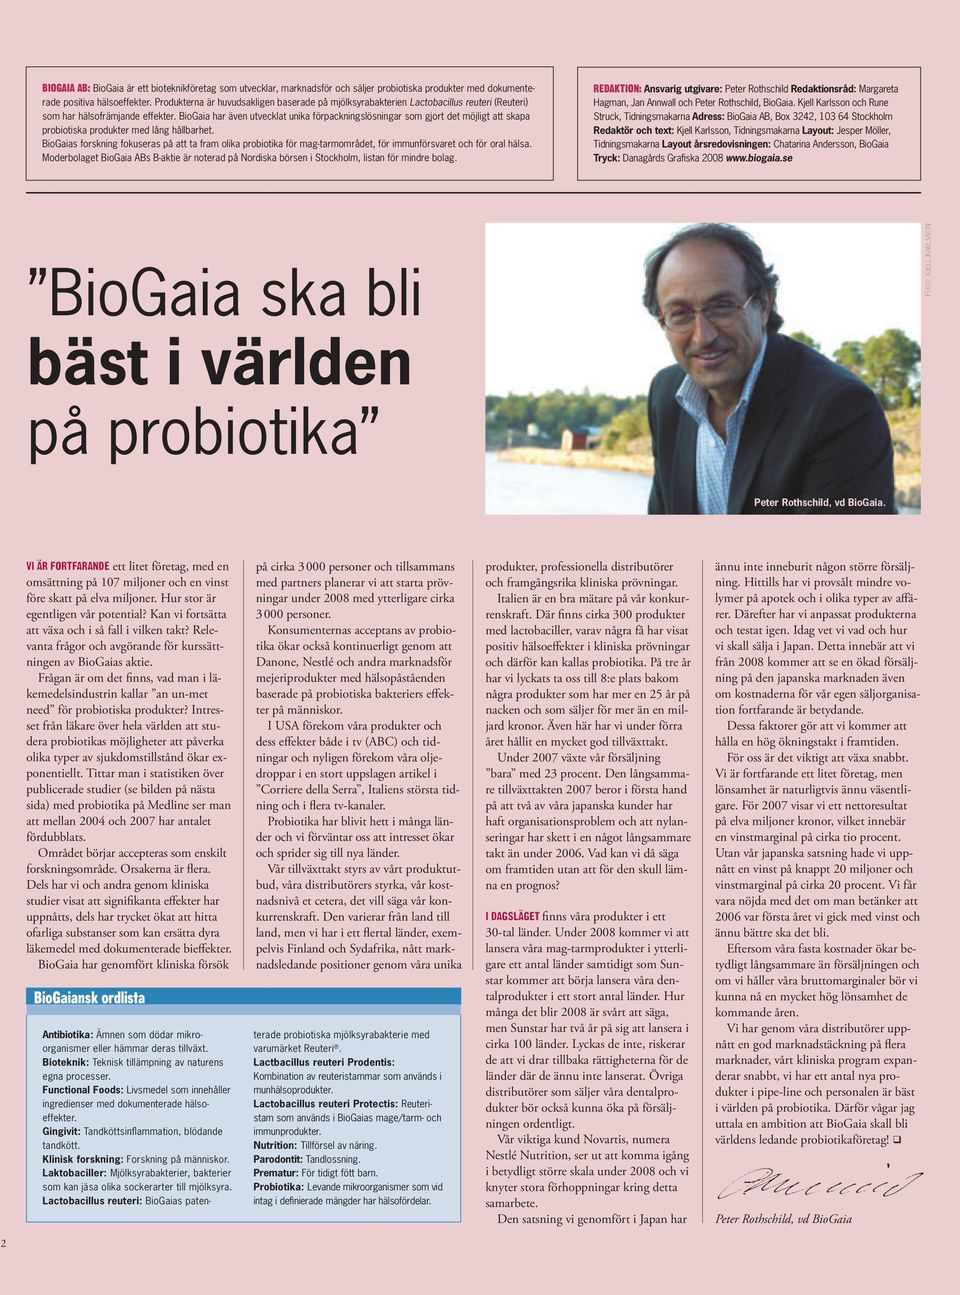 BioGaia har även utvecklat unika förpackningslösningar som gjort det möjligt att skapa probiotiska produkter med lång hållbarhet.